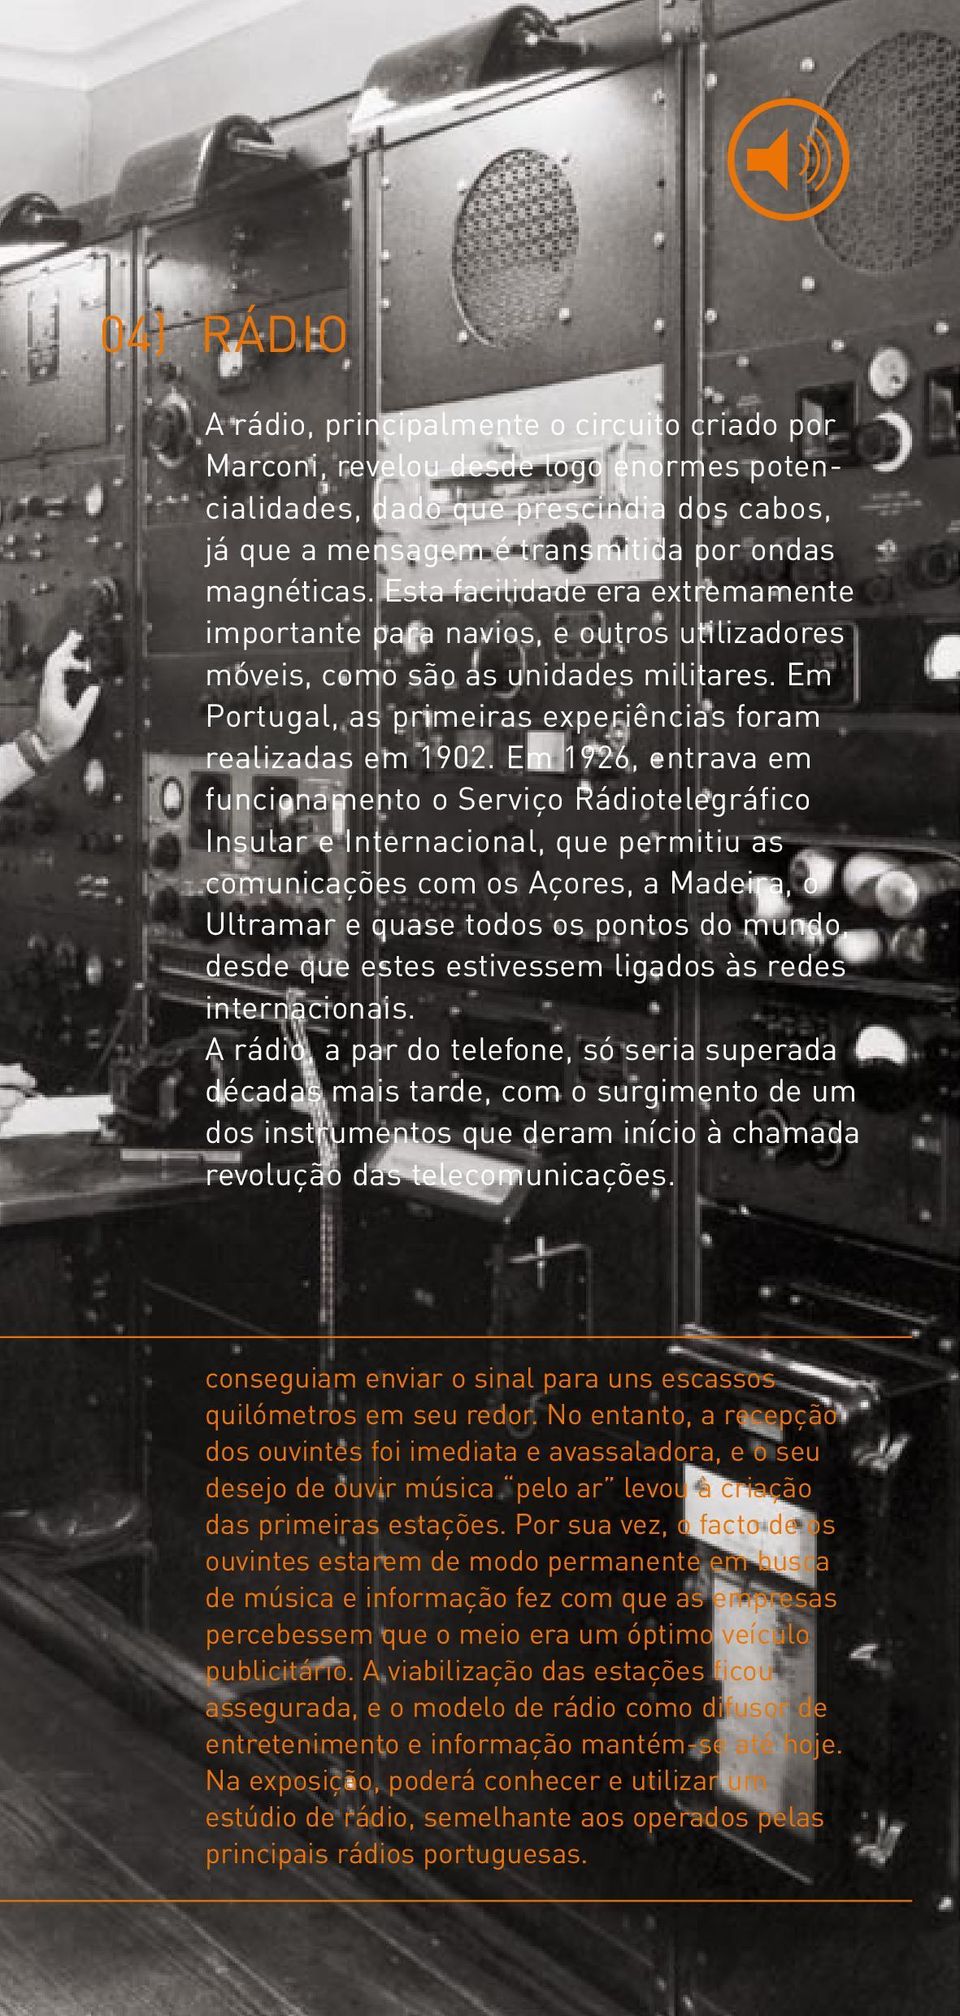 Em 1926, entrava em funcionamento o Serviço Rádiotelegráfico Insular e Internacional, que permitiu as comunicações com os Açores, a Madeira, o Ultramar e quase todos os pontos do mundo, desde que